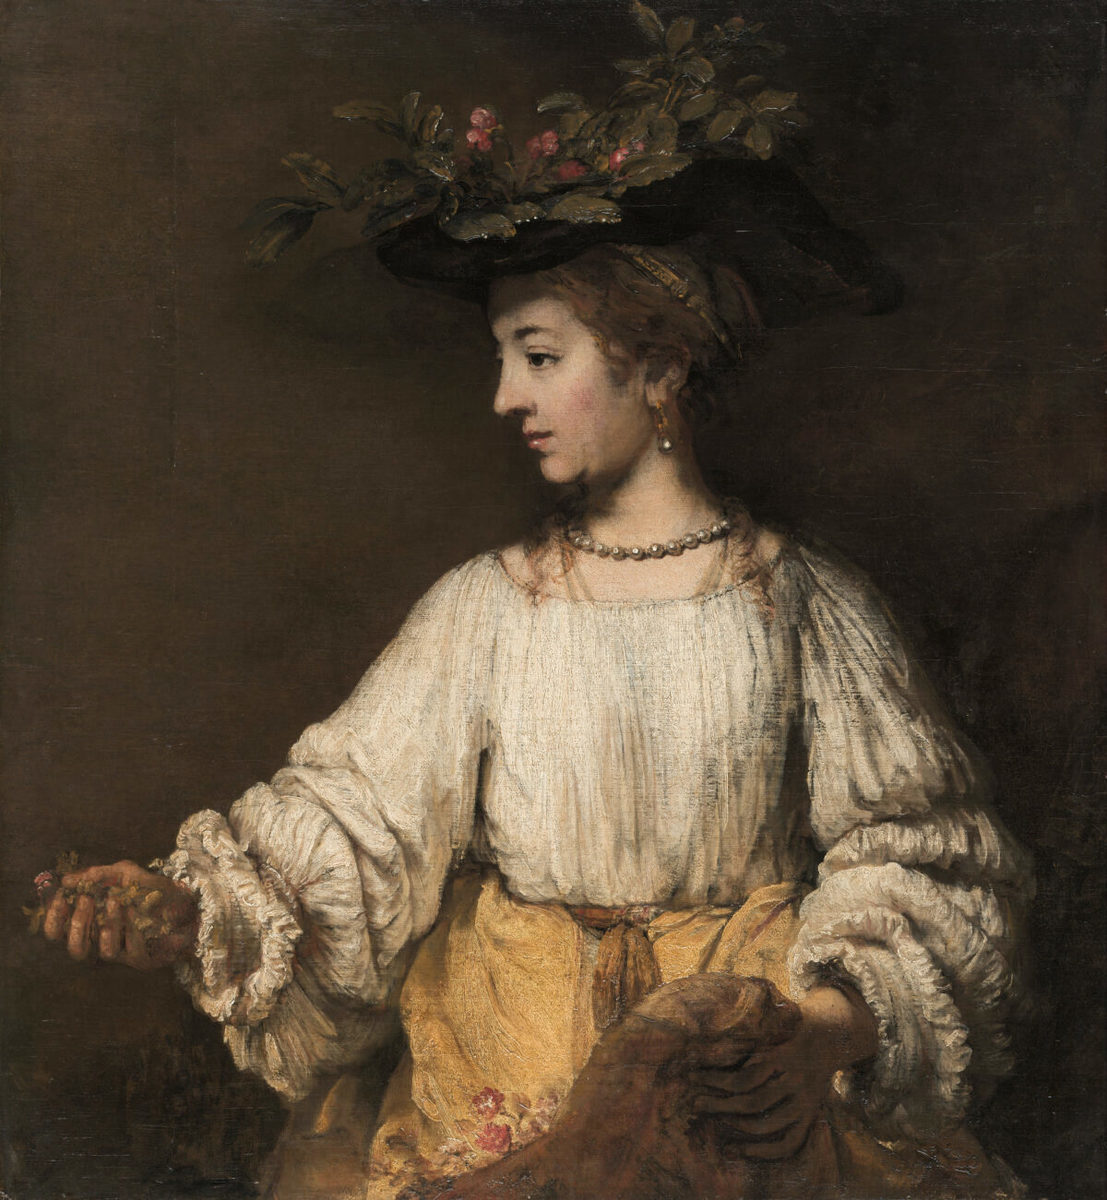 倫勃朗（Rembrandt），《芙勞拉》（Flora）局部，約1654年。油彩、畫布，大都會藝術博物館，紐約，美國。阿徹·米爾頓·亨廷頓（Archer M Huntington）於1926年捐念以紀念父親柯利斯·亨廷頓（Collis Potter Huntington）；大都會藝術博物館，紐約。（The Metropolitan Museum of Art提供）